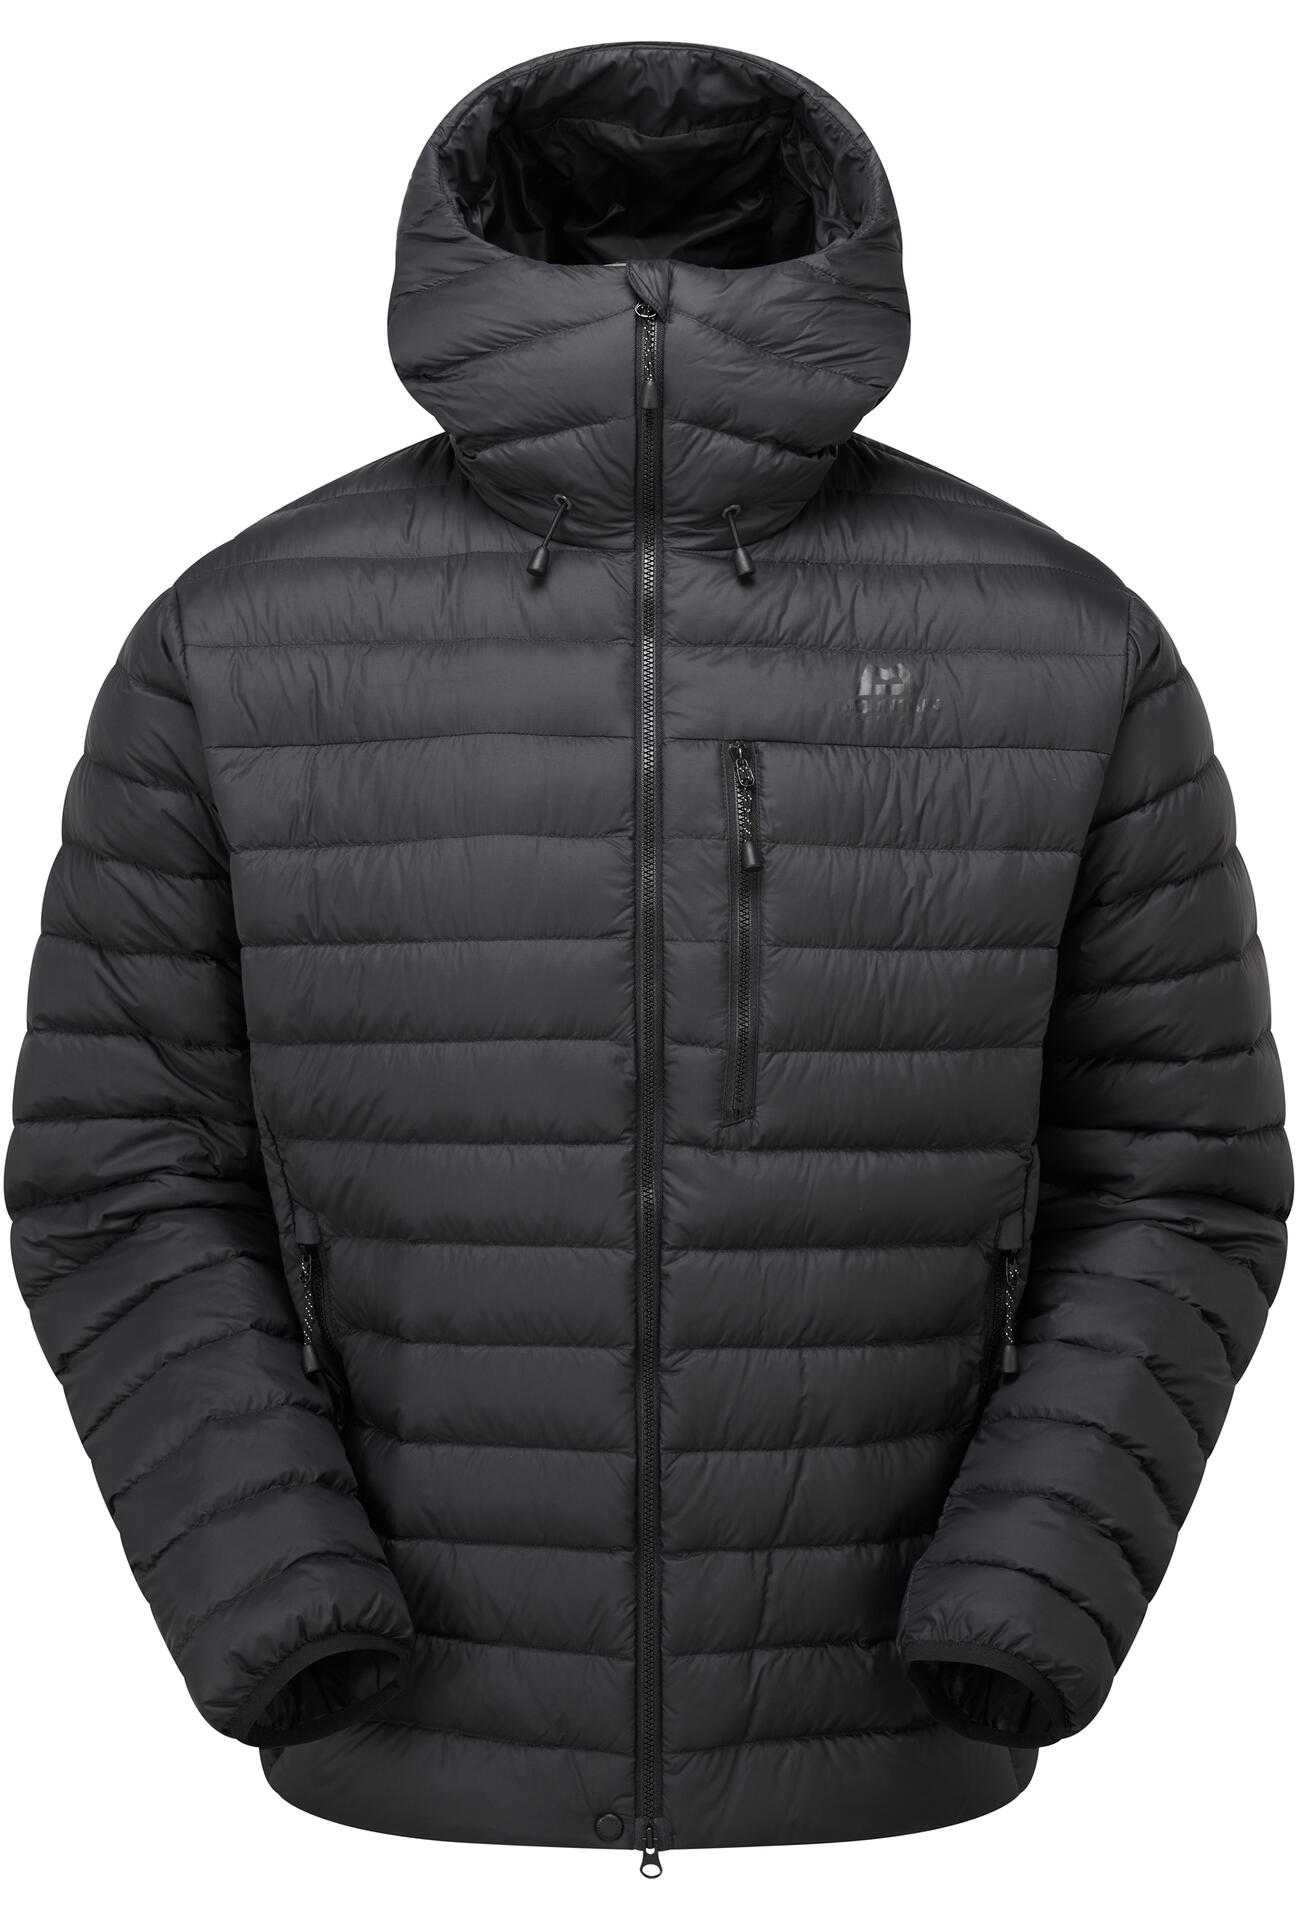 Mountain Equipment Earthrise Hooded Jacket Men'S Barva: black/black, Velikost: XL